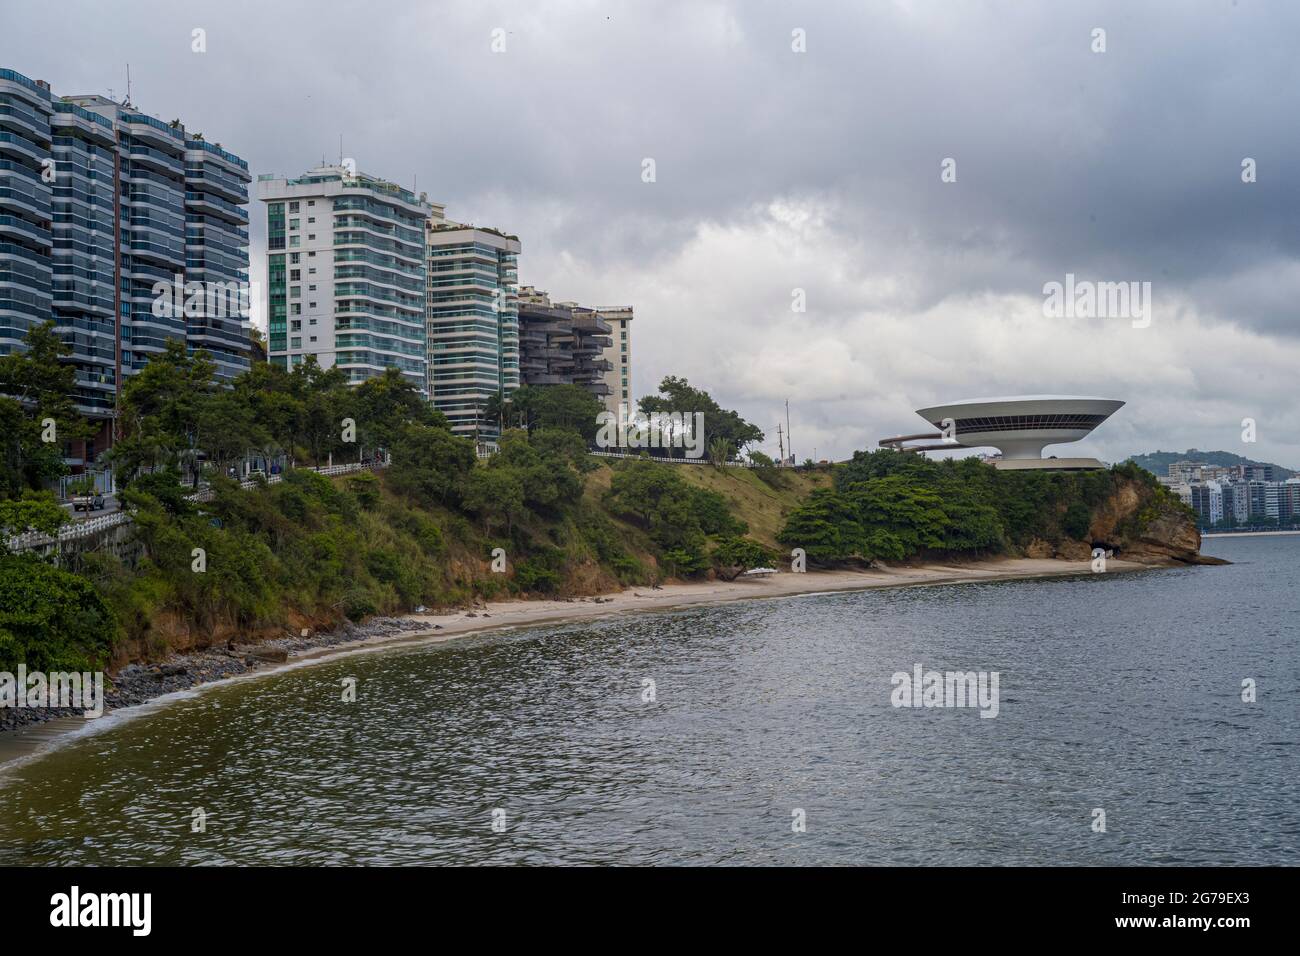 MAC Niteroi. Museum für Zeitgenössische Kunst von Niteroi. Architekt Oscar Niemeyer. Niteroi City, Bundesstaat Rio de Janeiro / Brasilien Südamerika Stockfoto